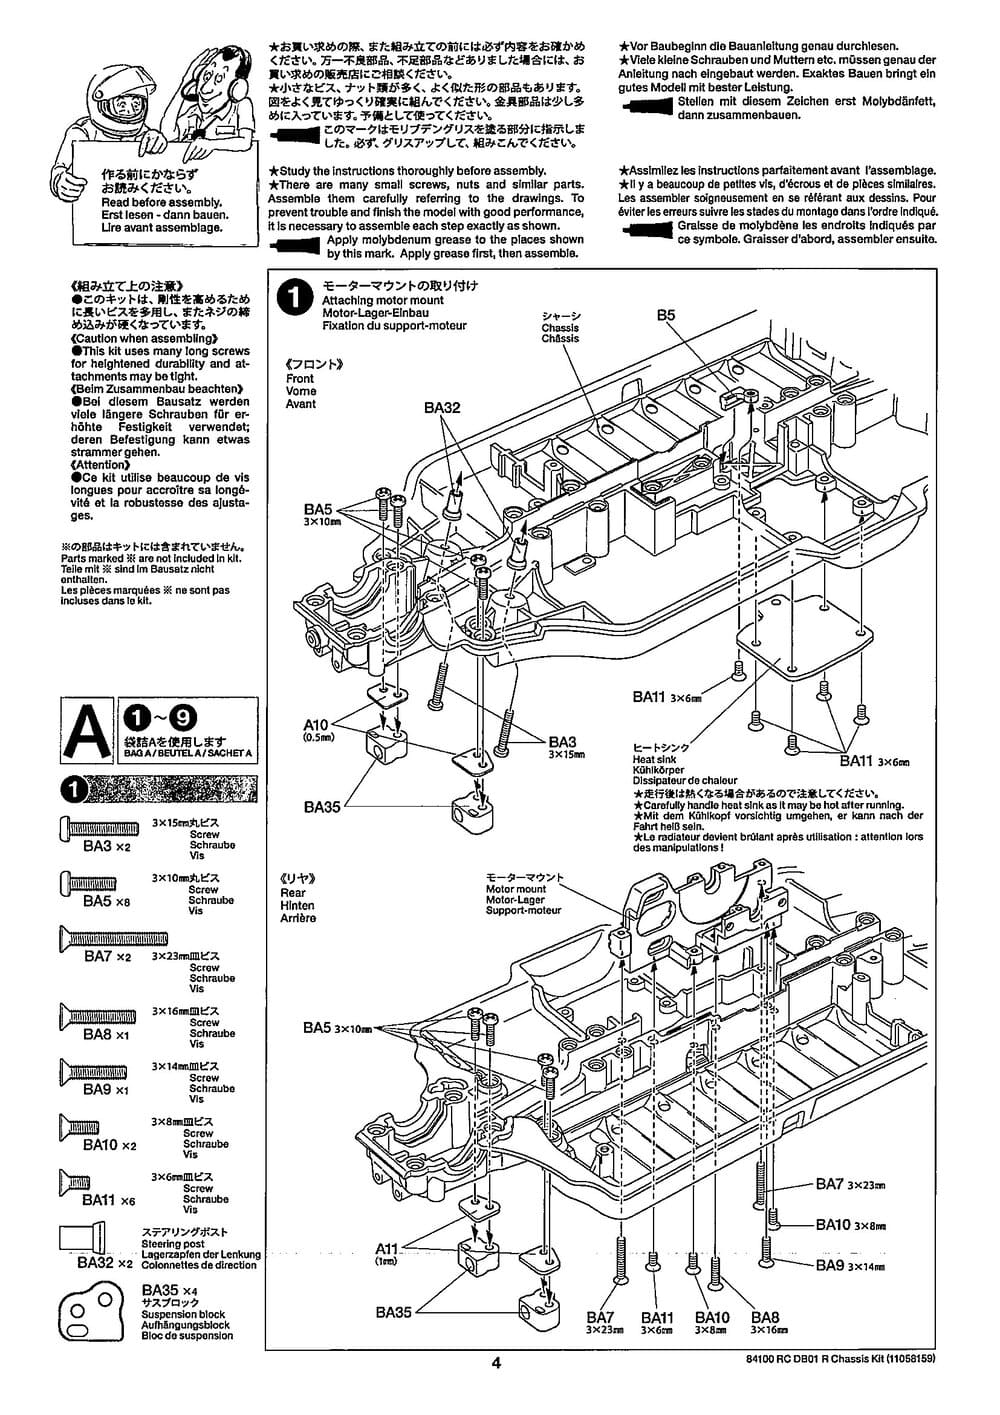 Tamiya - DB-01R Chassis - Manual - Page 4